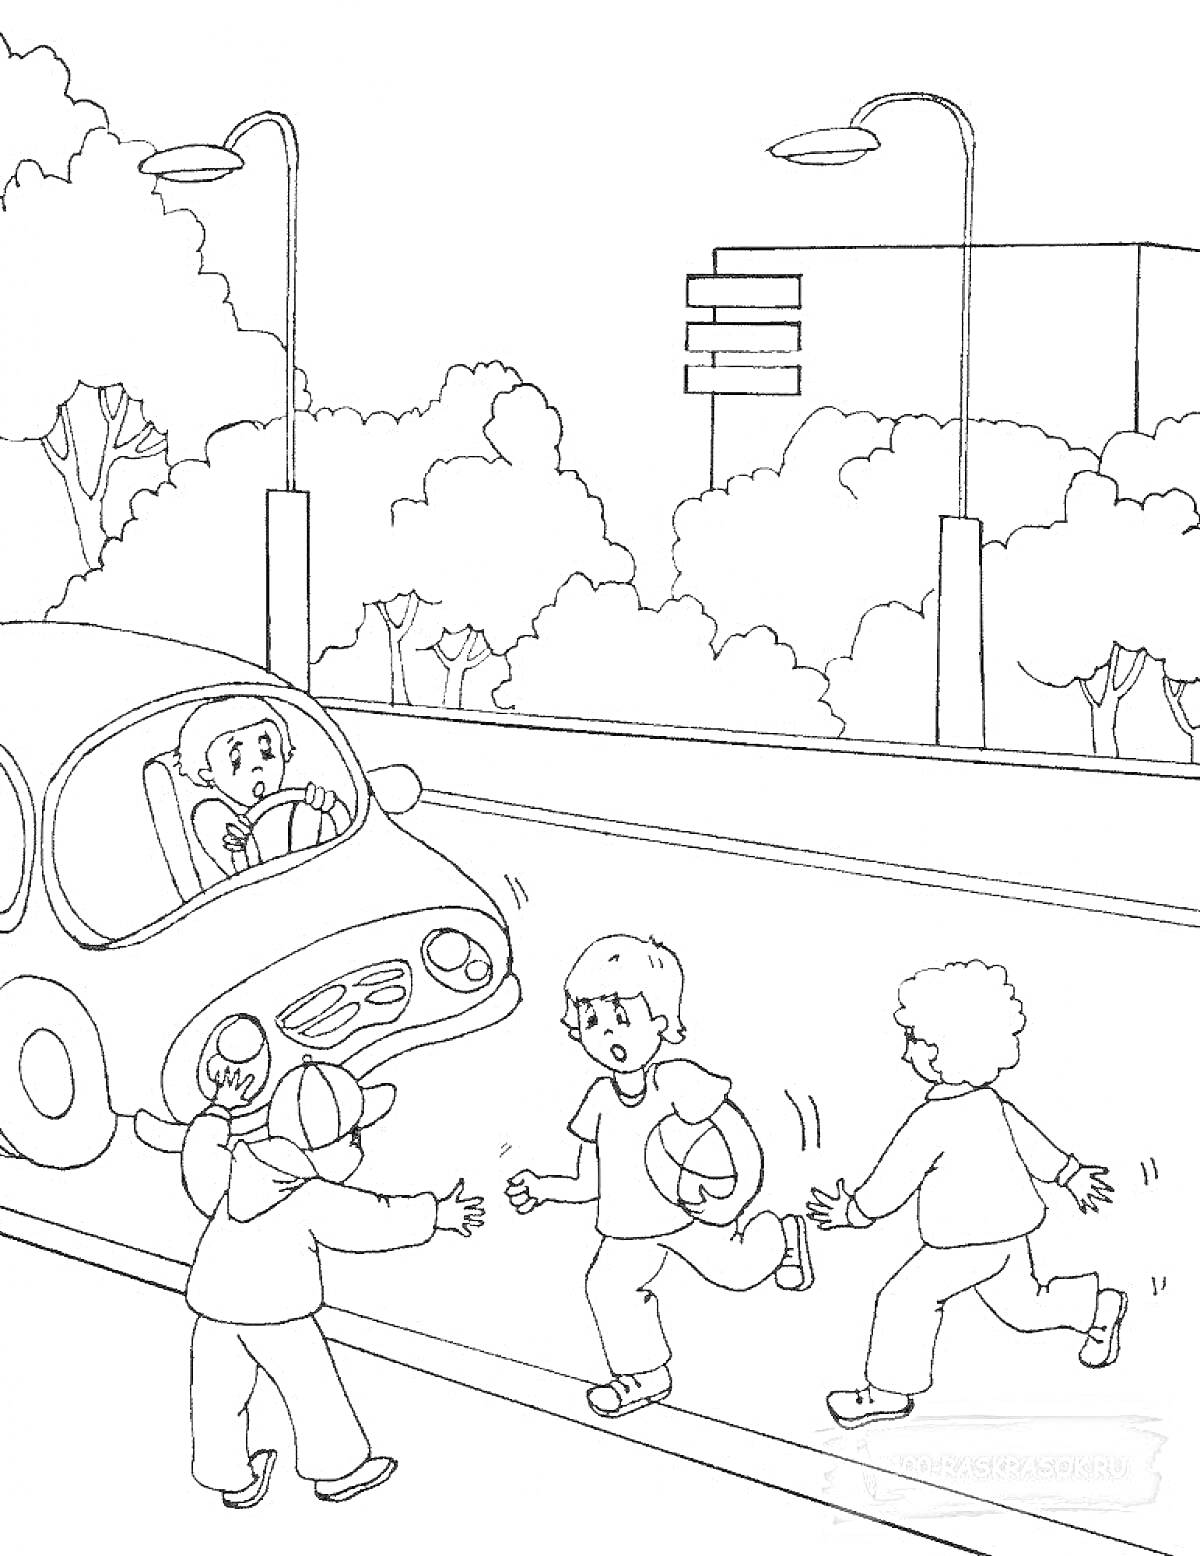 Раскраска Дети играют возле дороги, рядом проезжает автомобиль, фон - деревья, дорожные знаки, здание, фонари